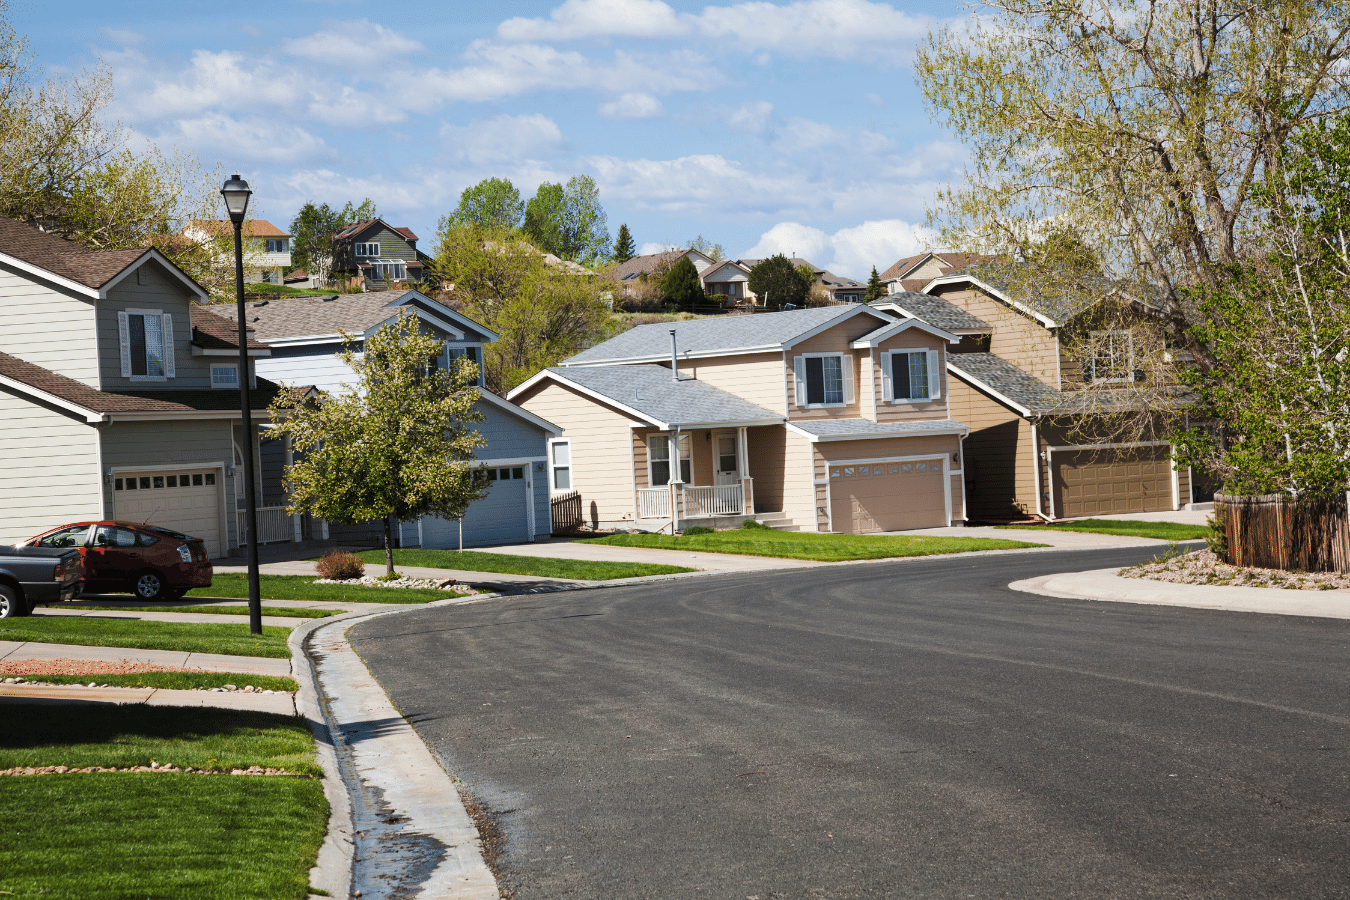 Homes in the Westminster, Denver, Colorado area